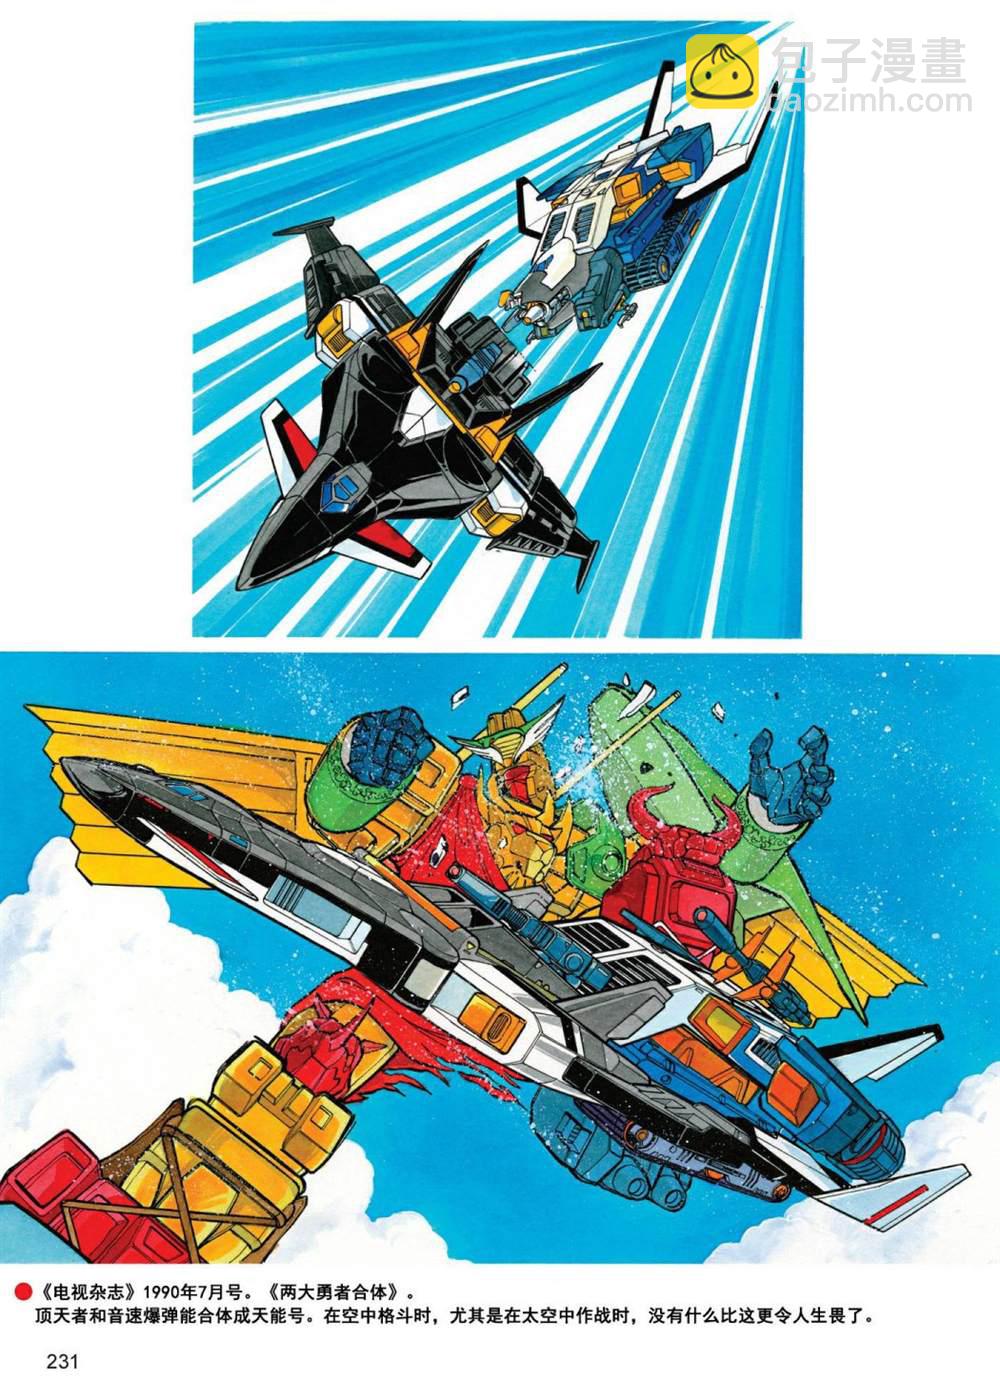 變形金剛日版G1雜誌插畫 - 《戰鬥吧！超機械生命體變形金剛：地帶》 - 3